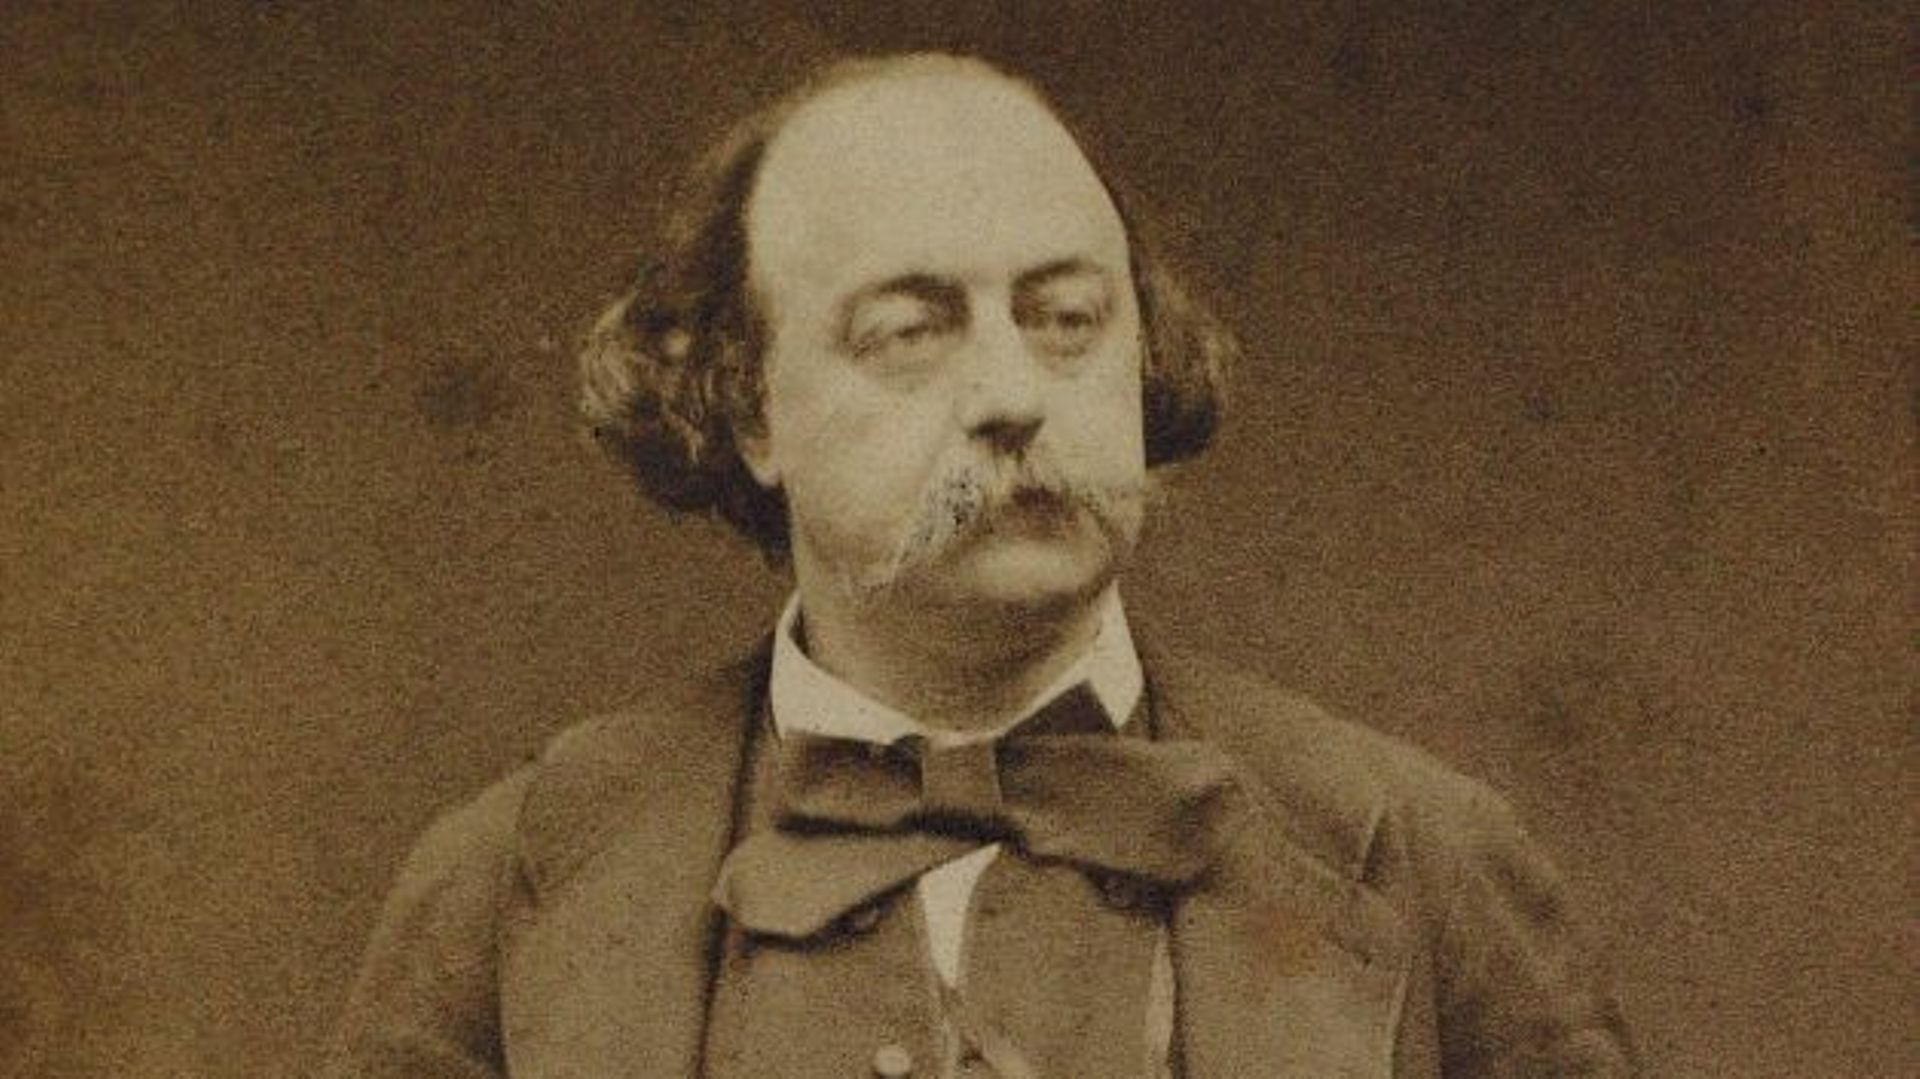 Gustave Flaubert (1821-1880) vers 1860, portrait signé Étienne Carjat.